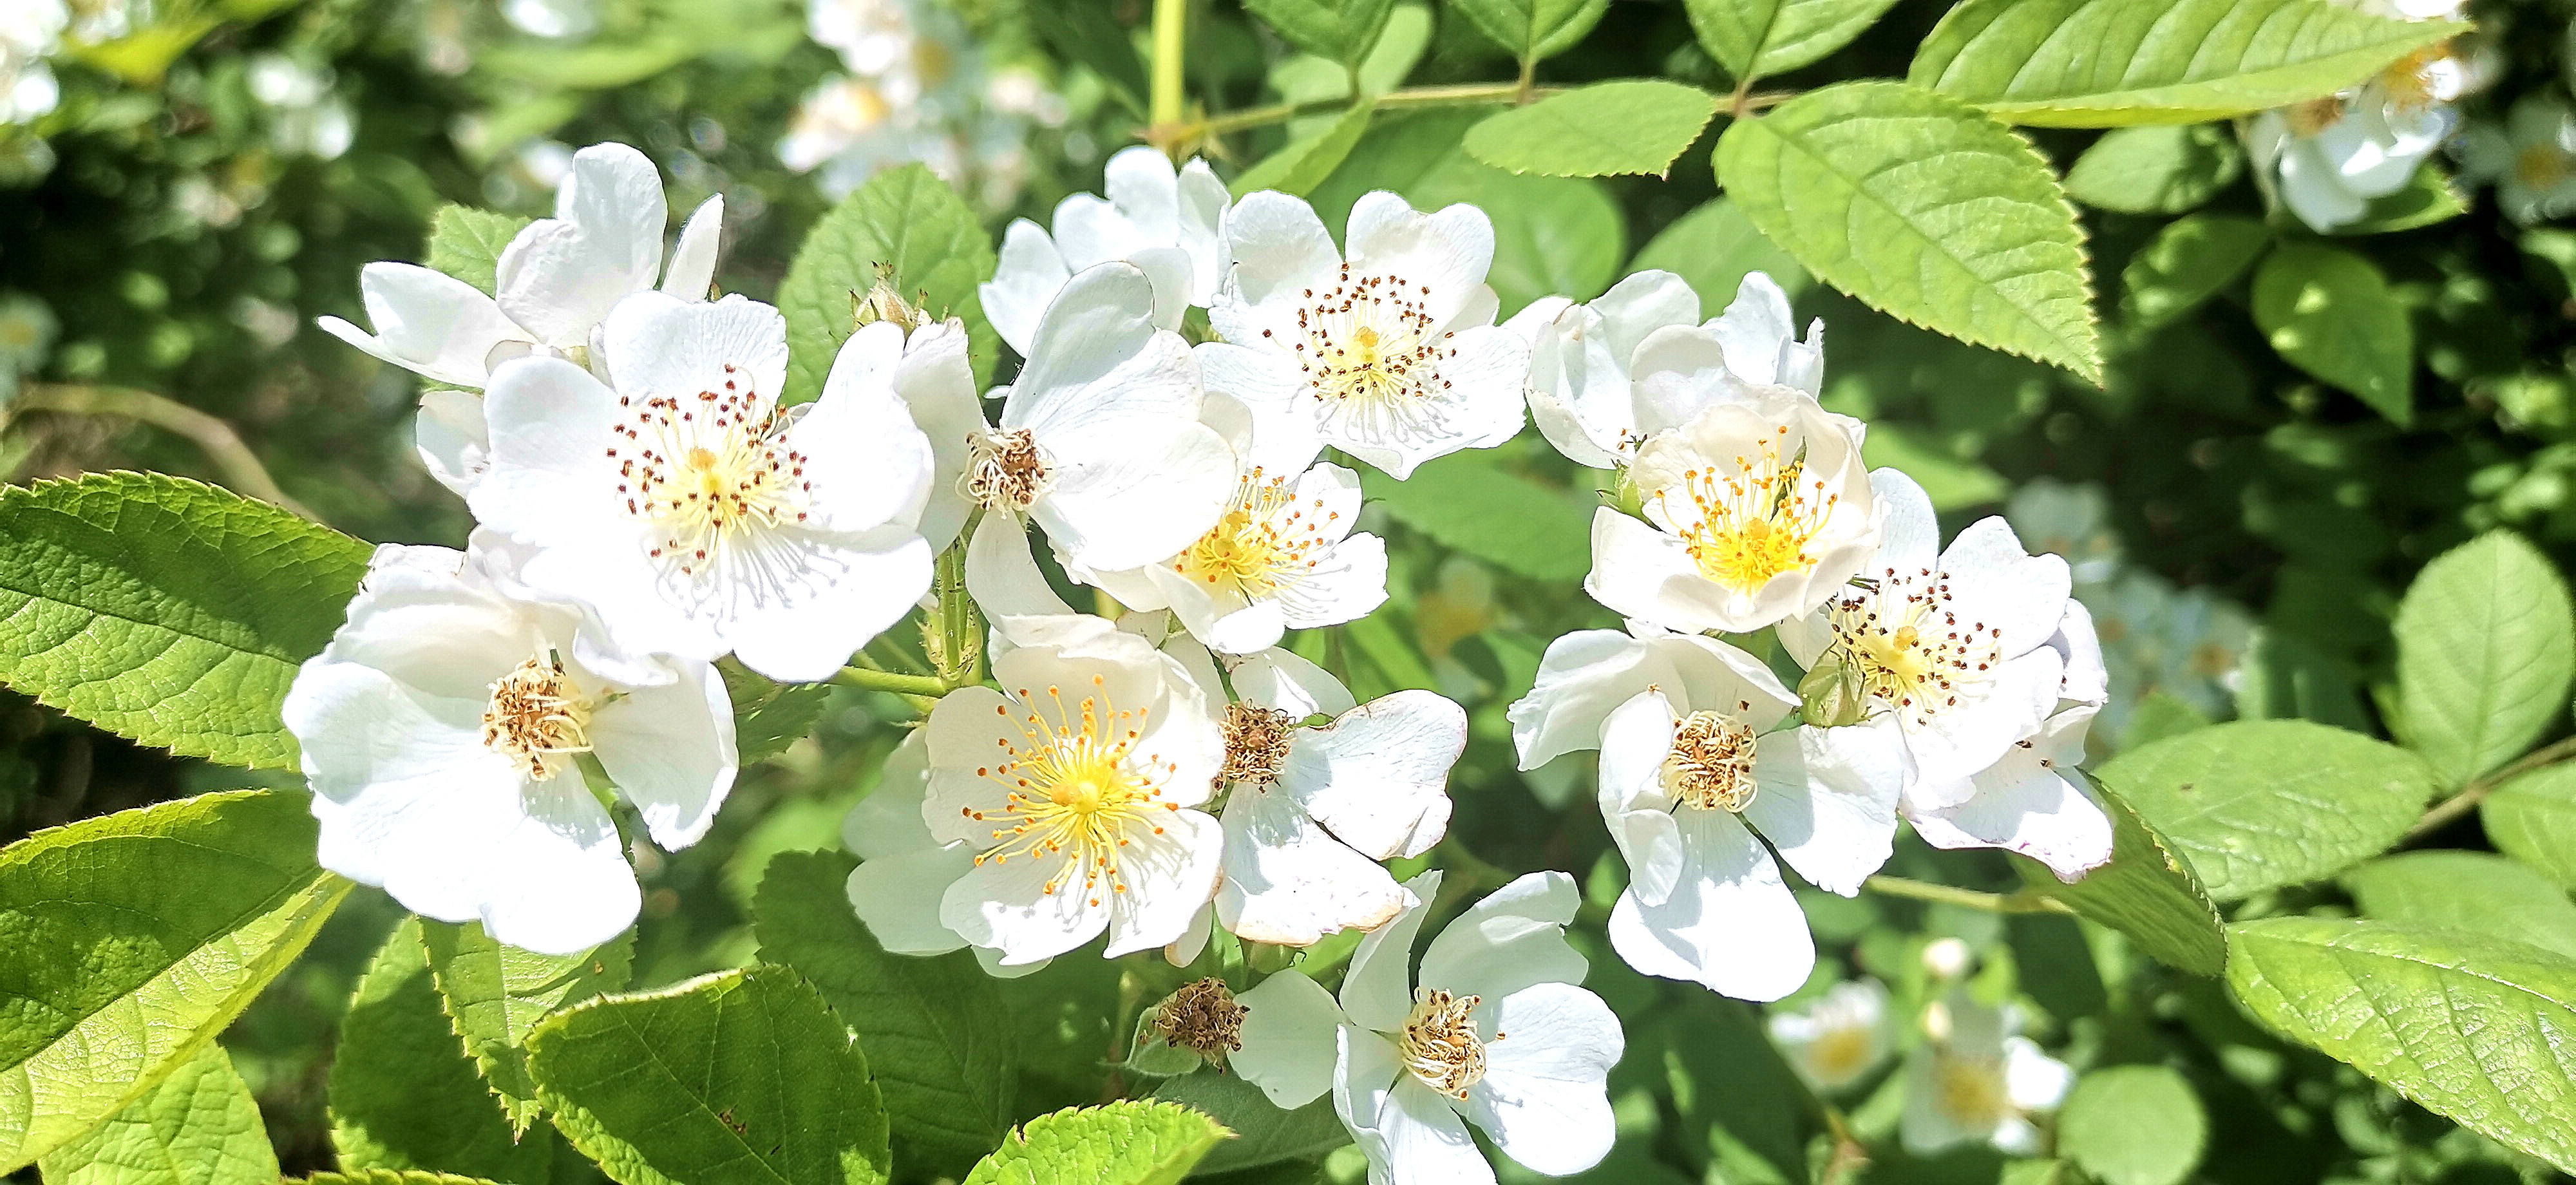 吉安视觉:后河味道的白色野蔷薇花开烂漫